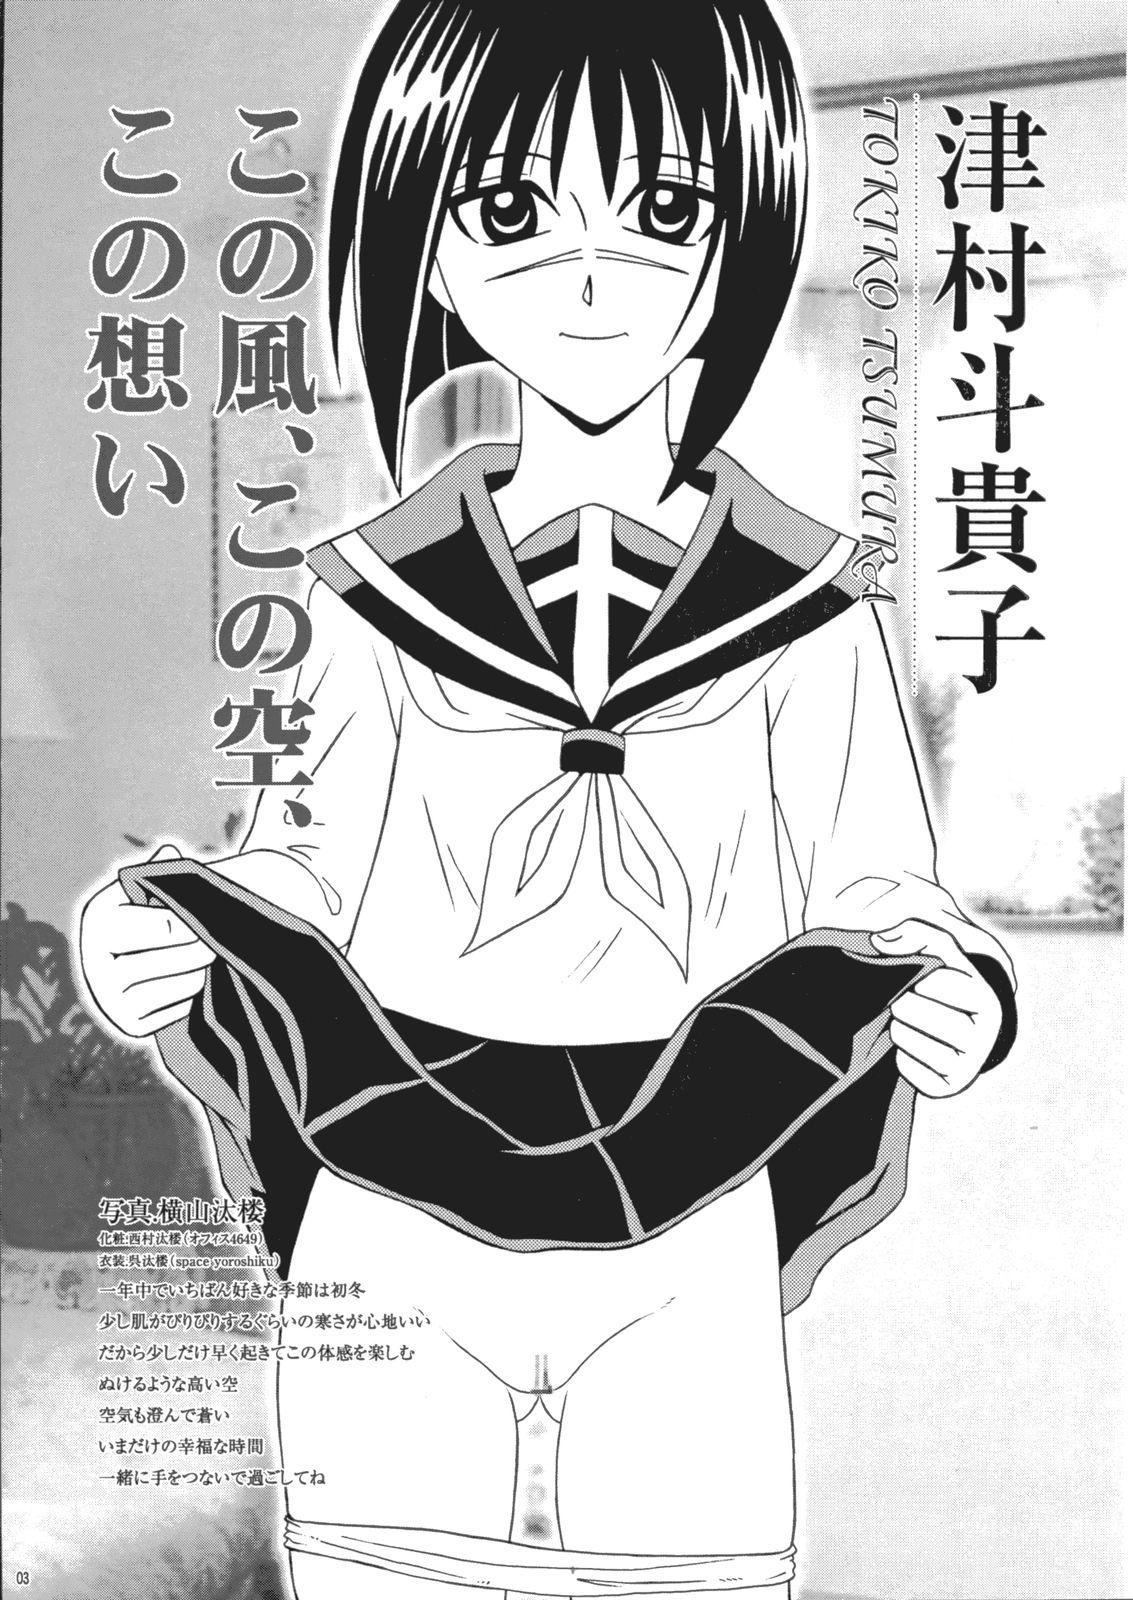 Flexible Saku-chan Kurabu Vol.03 - Naruto One piece Ichigo 100 Is Hikaru no go Bang Bros - Page 2